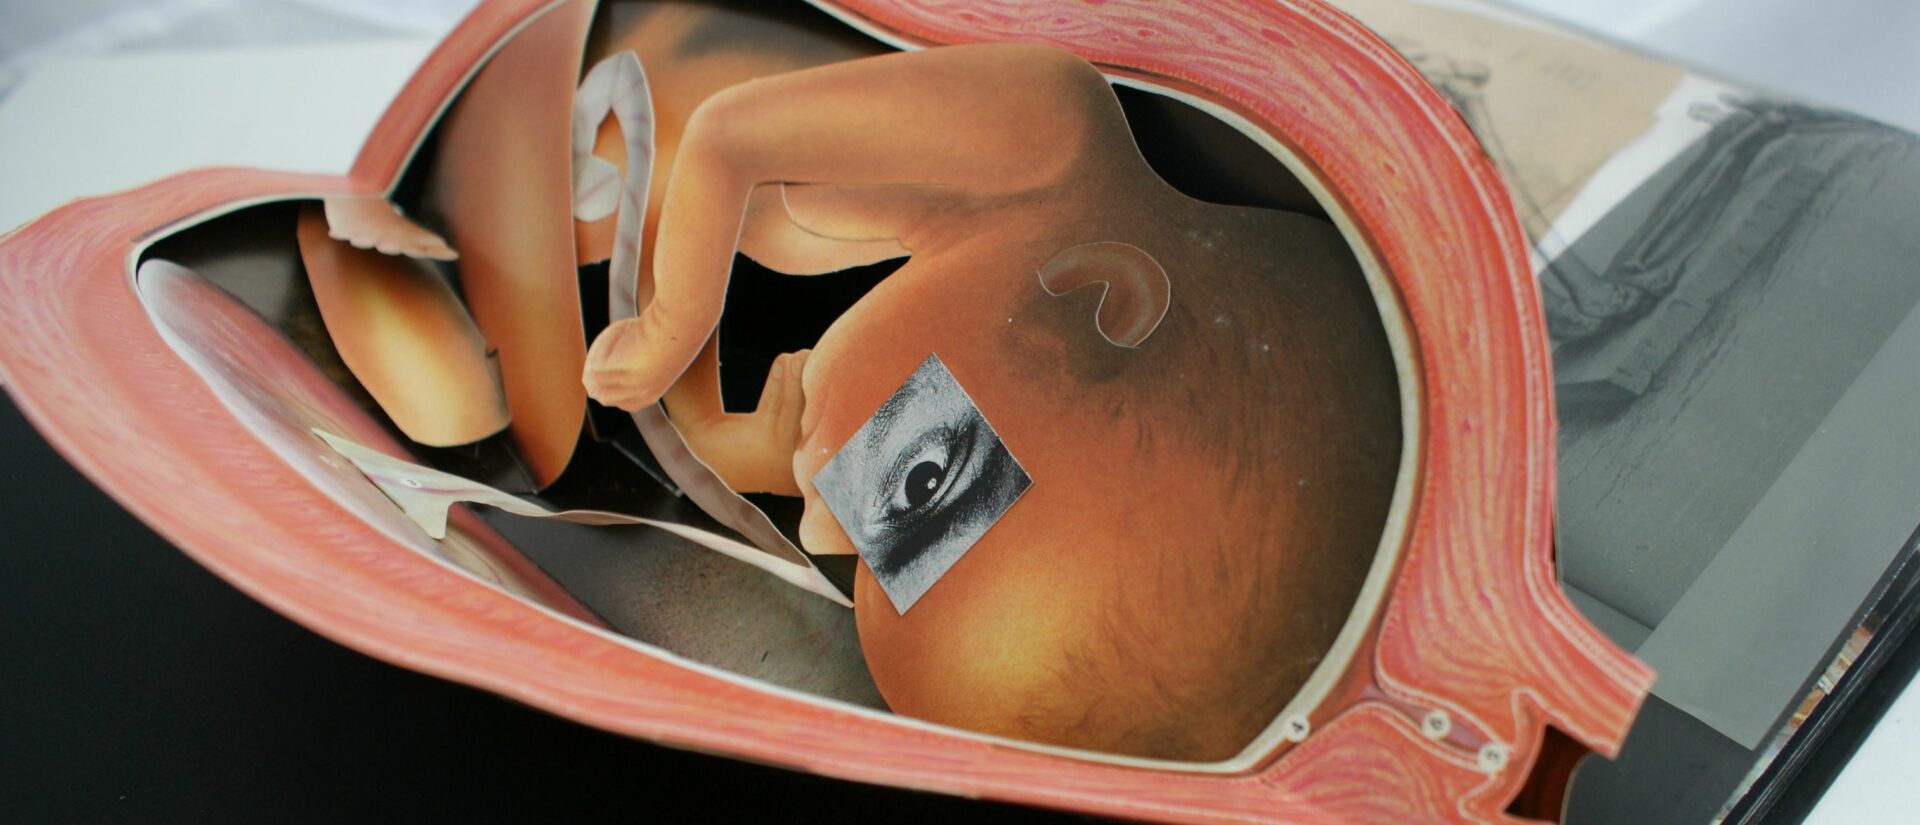 Oeuvre d'art sur l'avortement | © Don Urban/Flickr/CC BY-NC 2.0